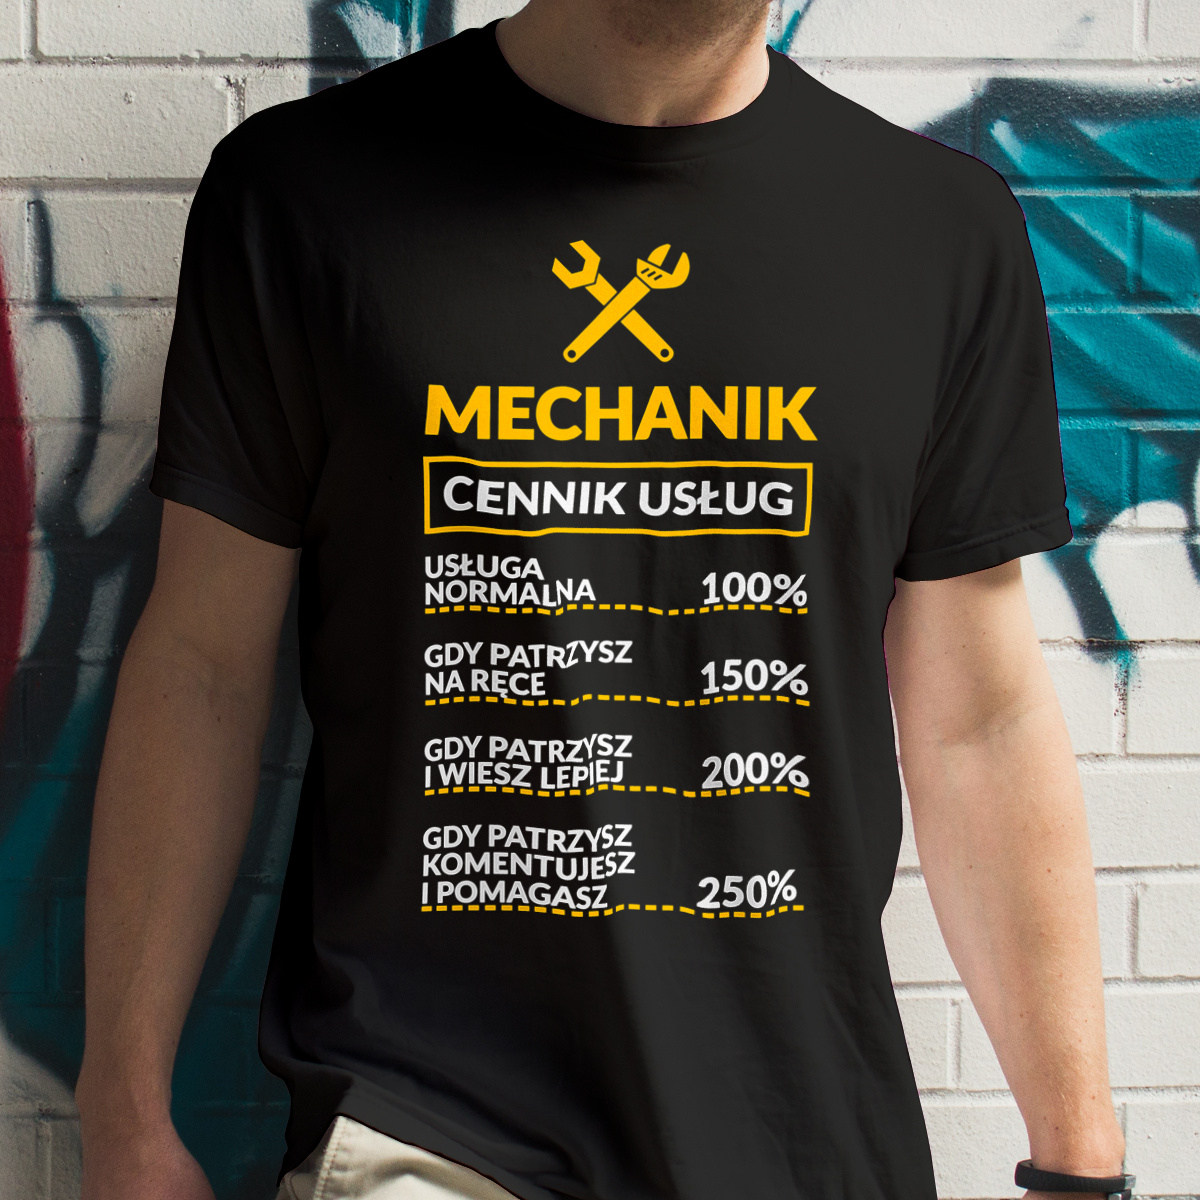 Mechanik - Cennik Usług - Męska Koszulka Czarna